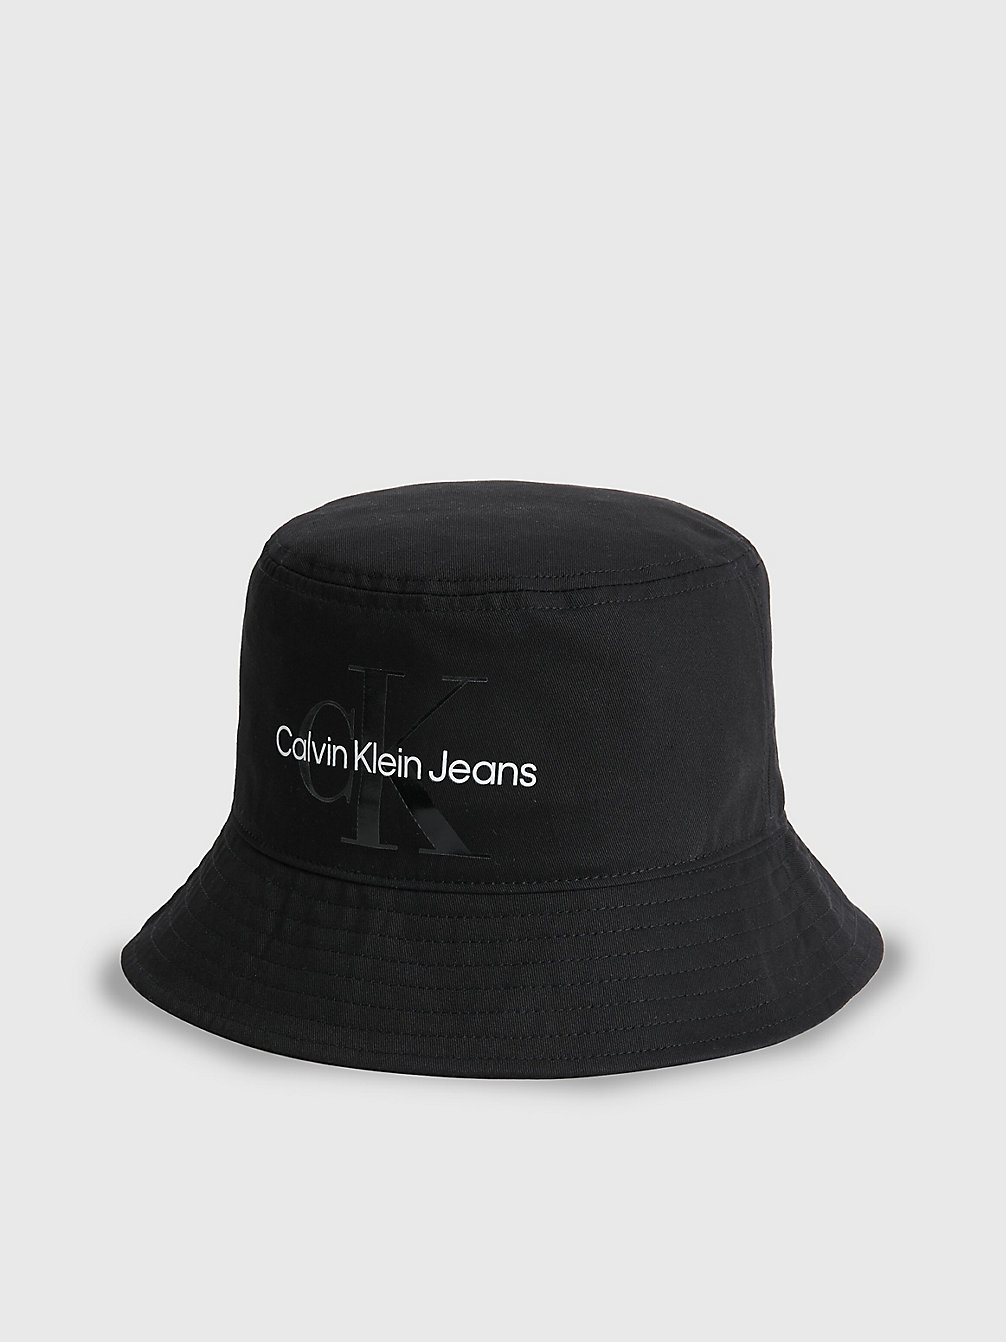 BLACK > Kapelusz Typu Bucket Hat Z Bawełny Organicznej > undefined Mężczyźni - Calvin Klein